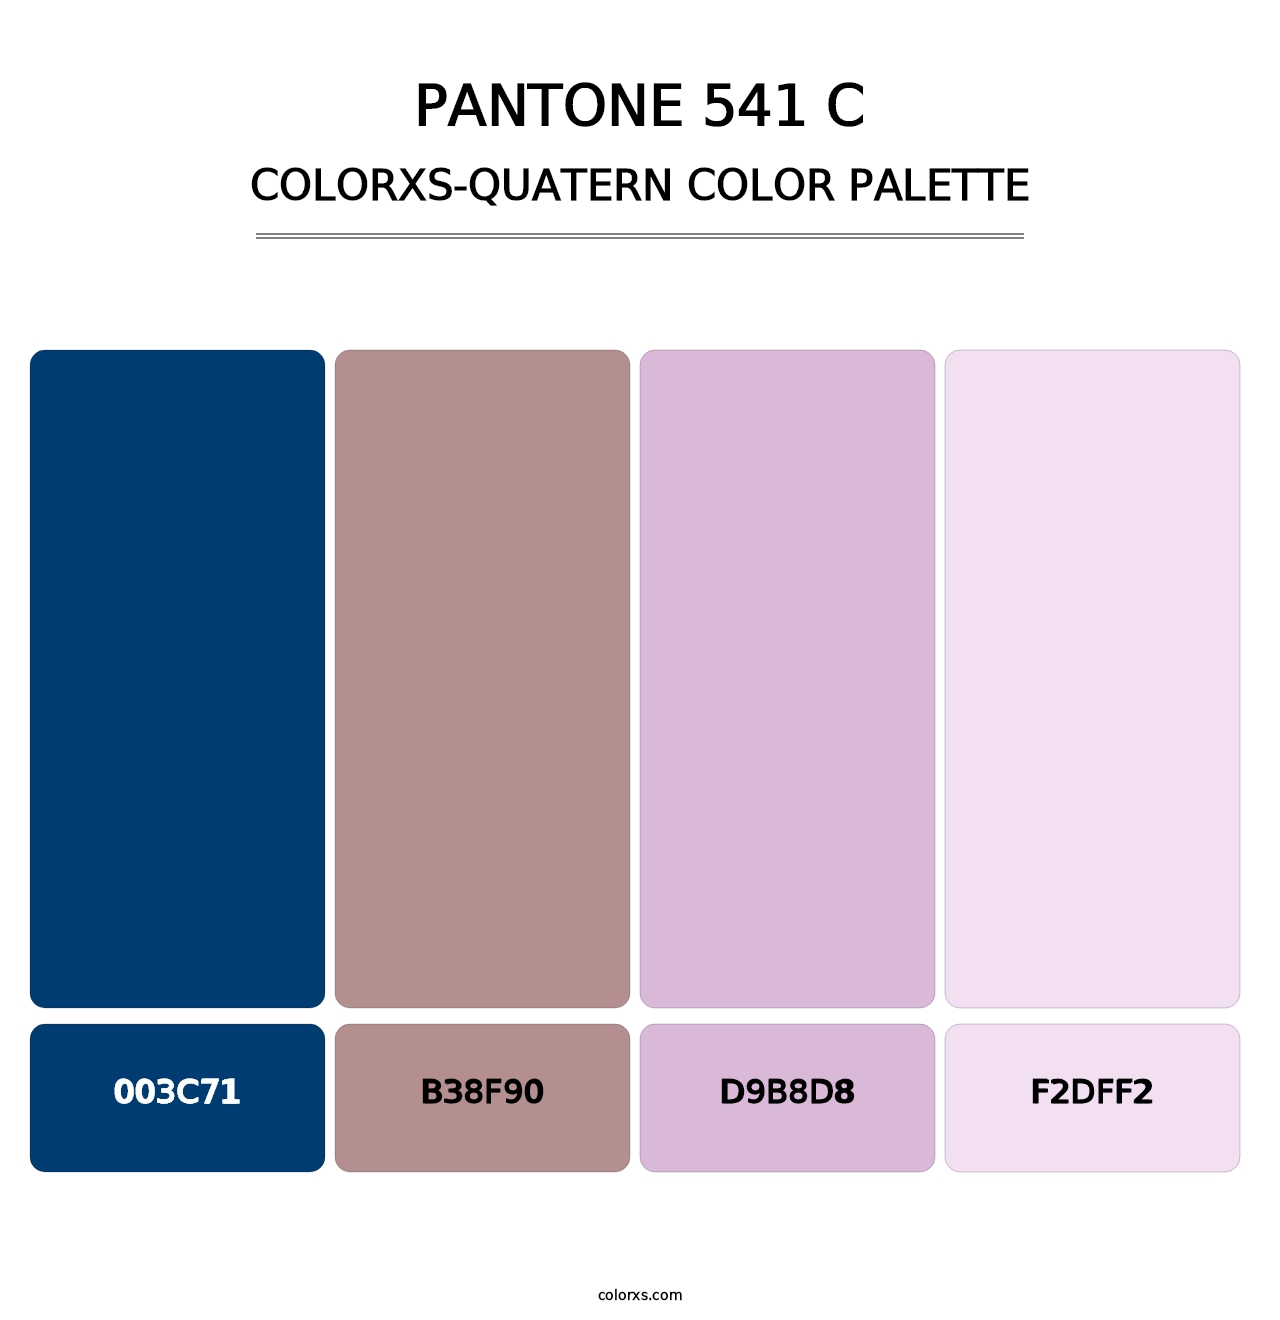 PANTONE 541 C - Colorxs Quatern Palette